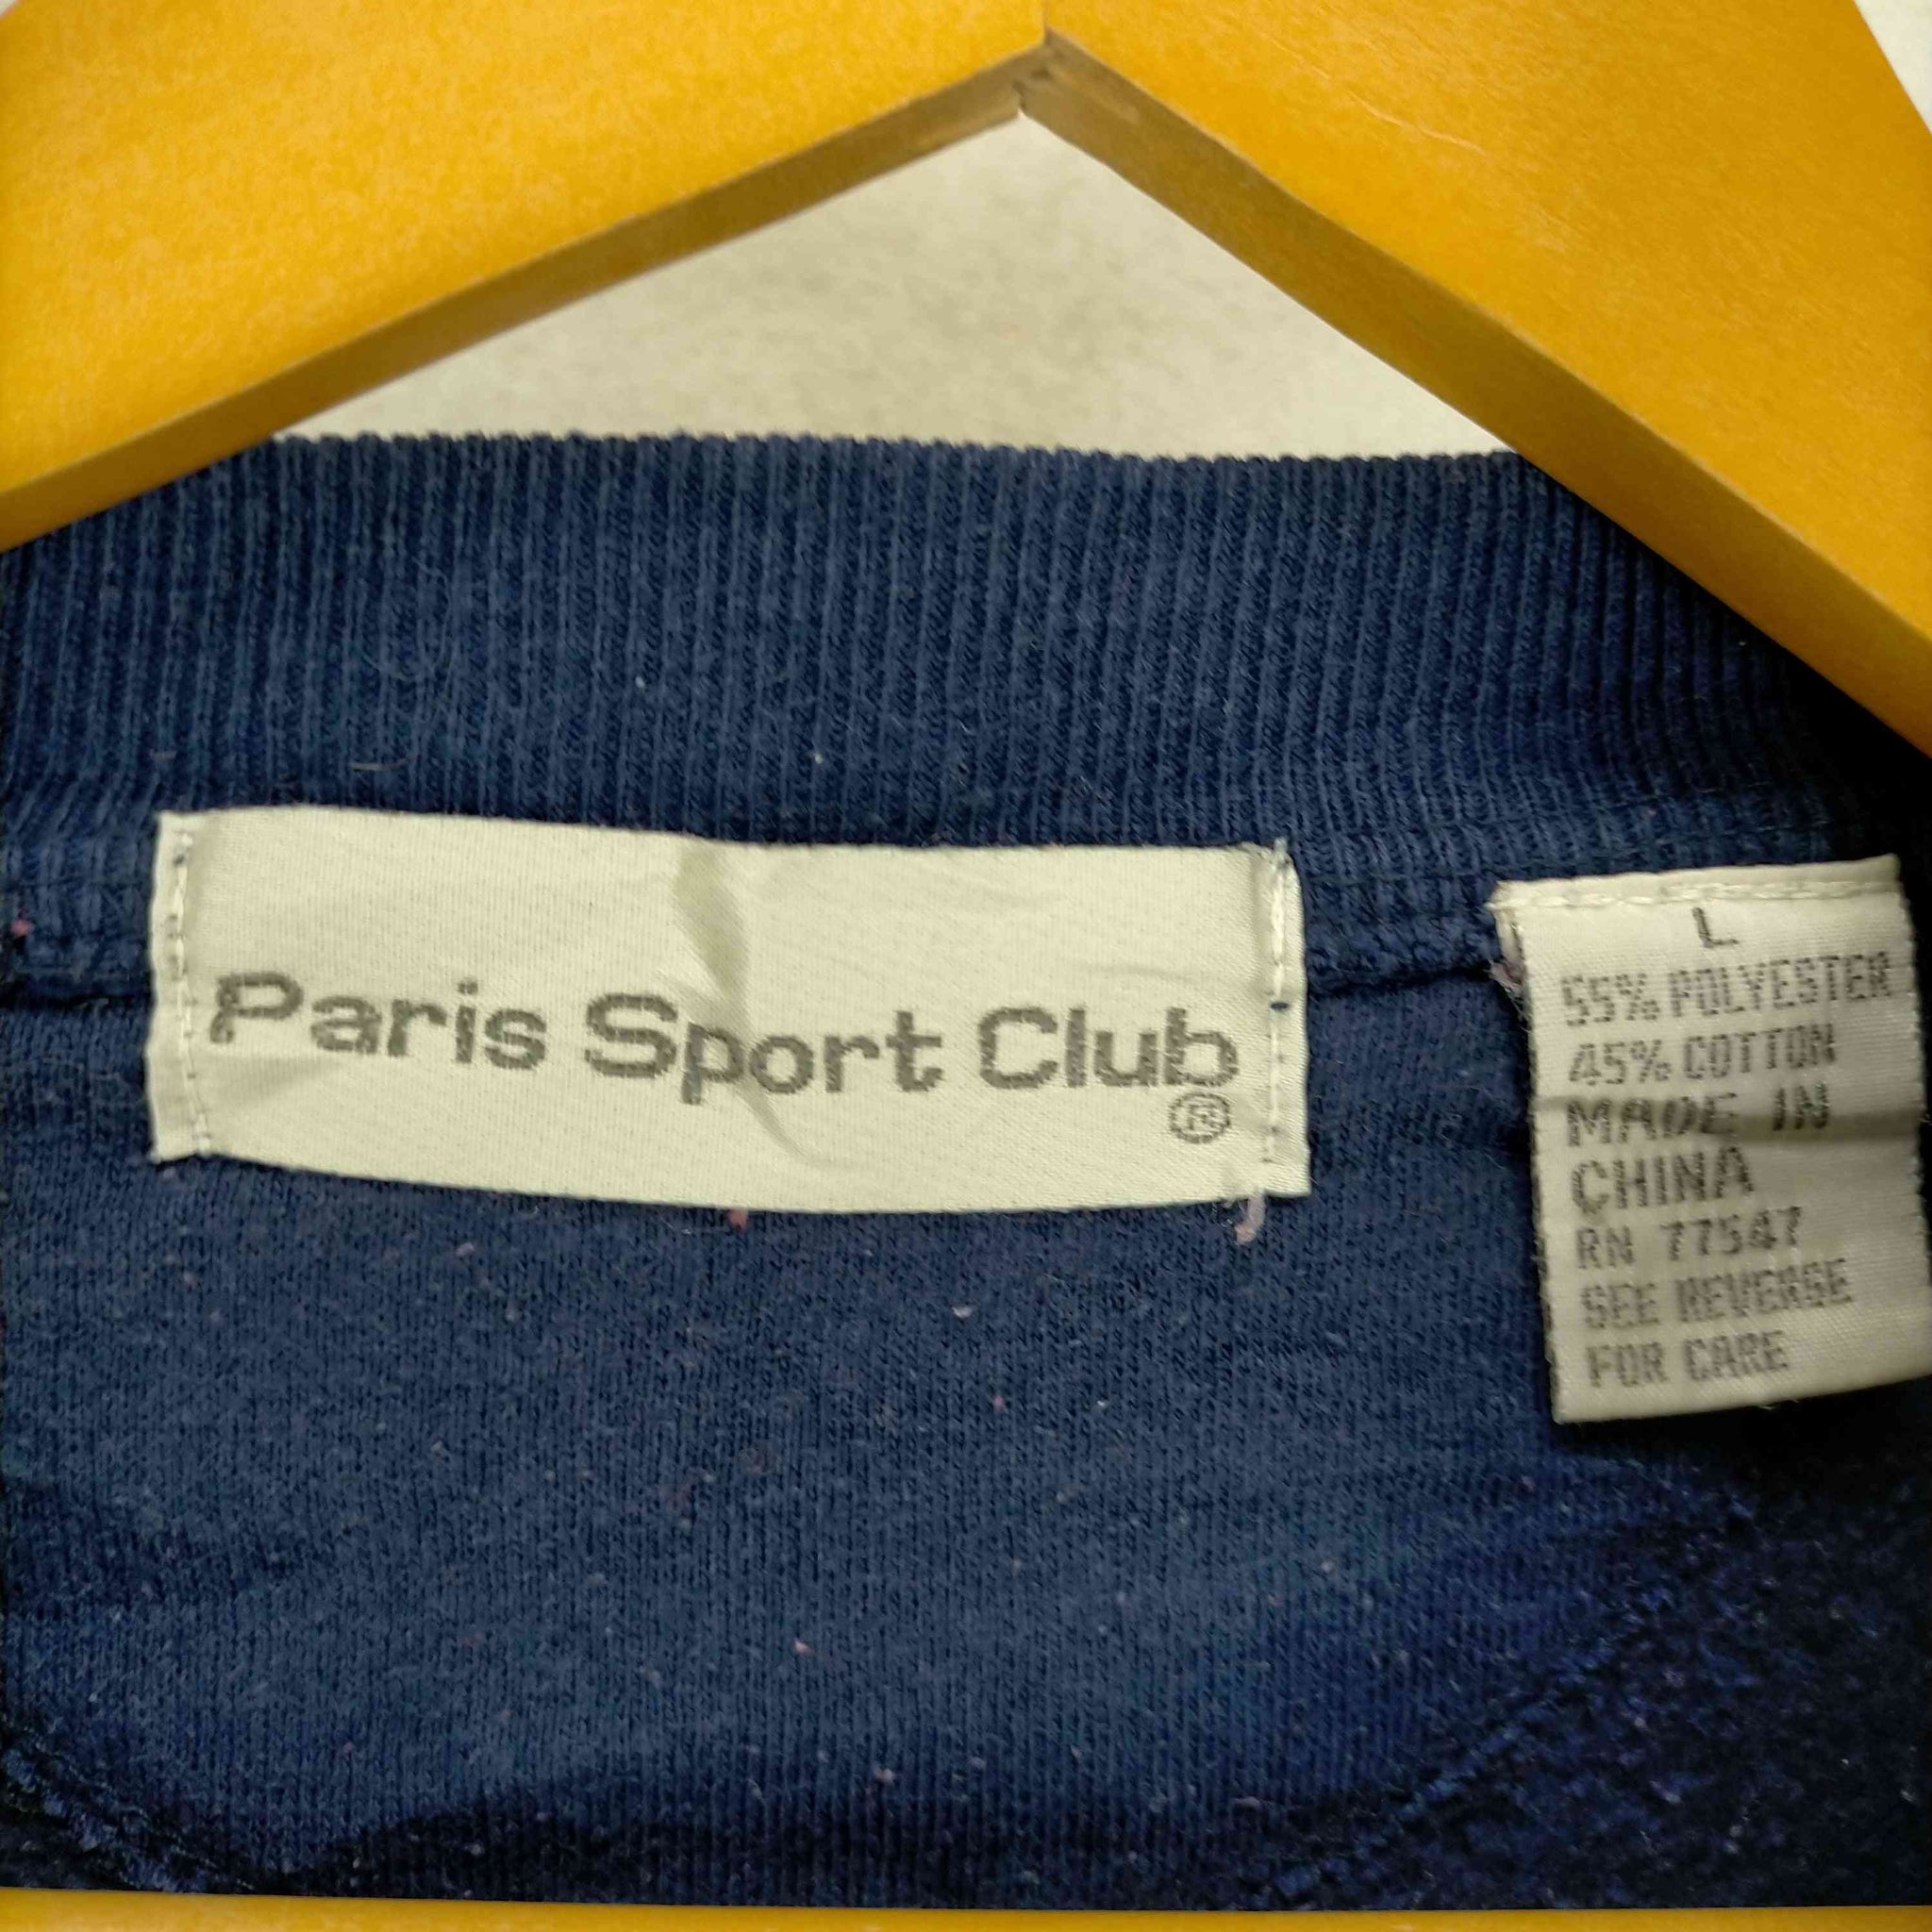 paris sport club(パリス スポーツ クラブ)ロゴプリントスウェット